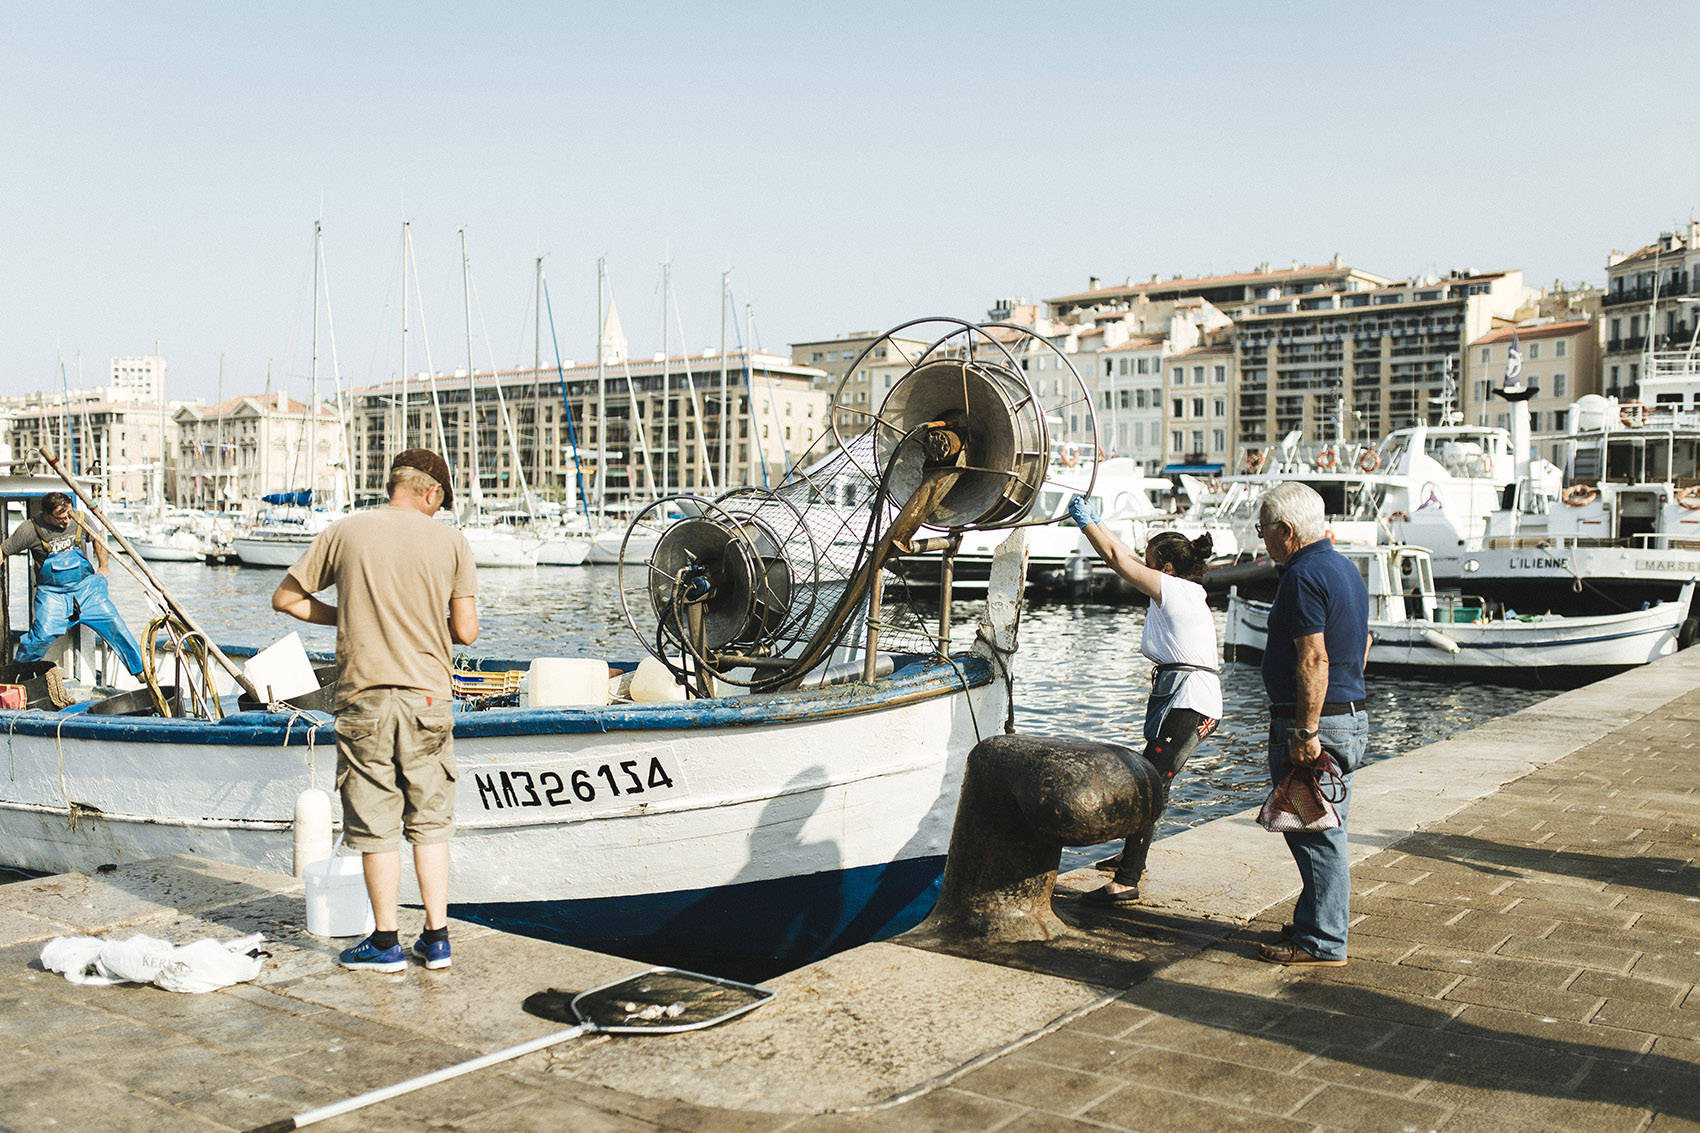 Hélène legt mit dem Fischkutter im Hafen an, einige Männer stehen am Quai.